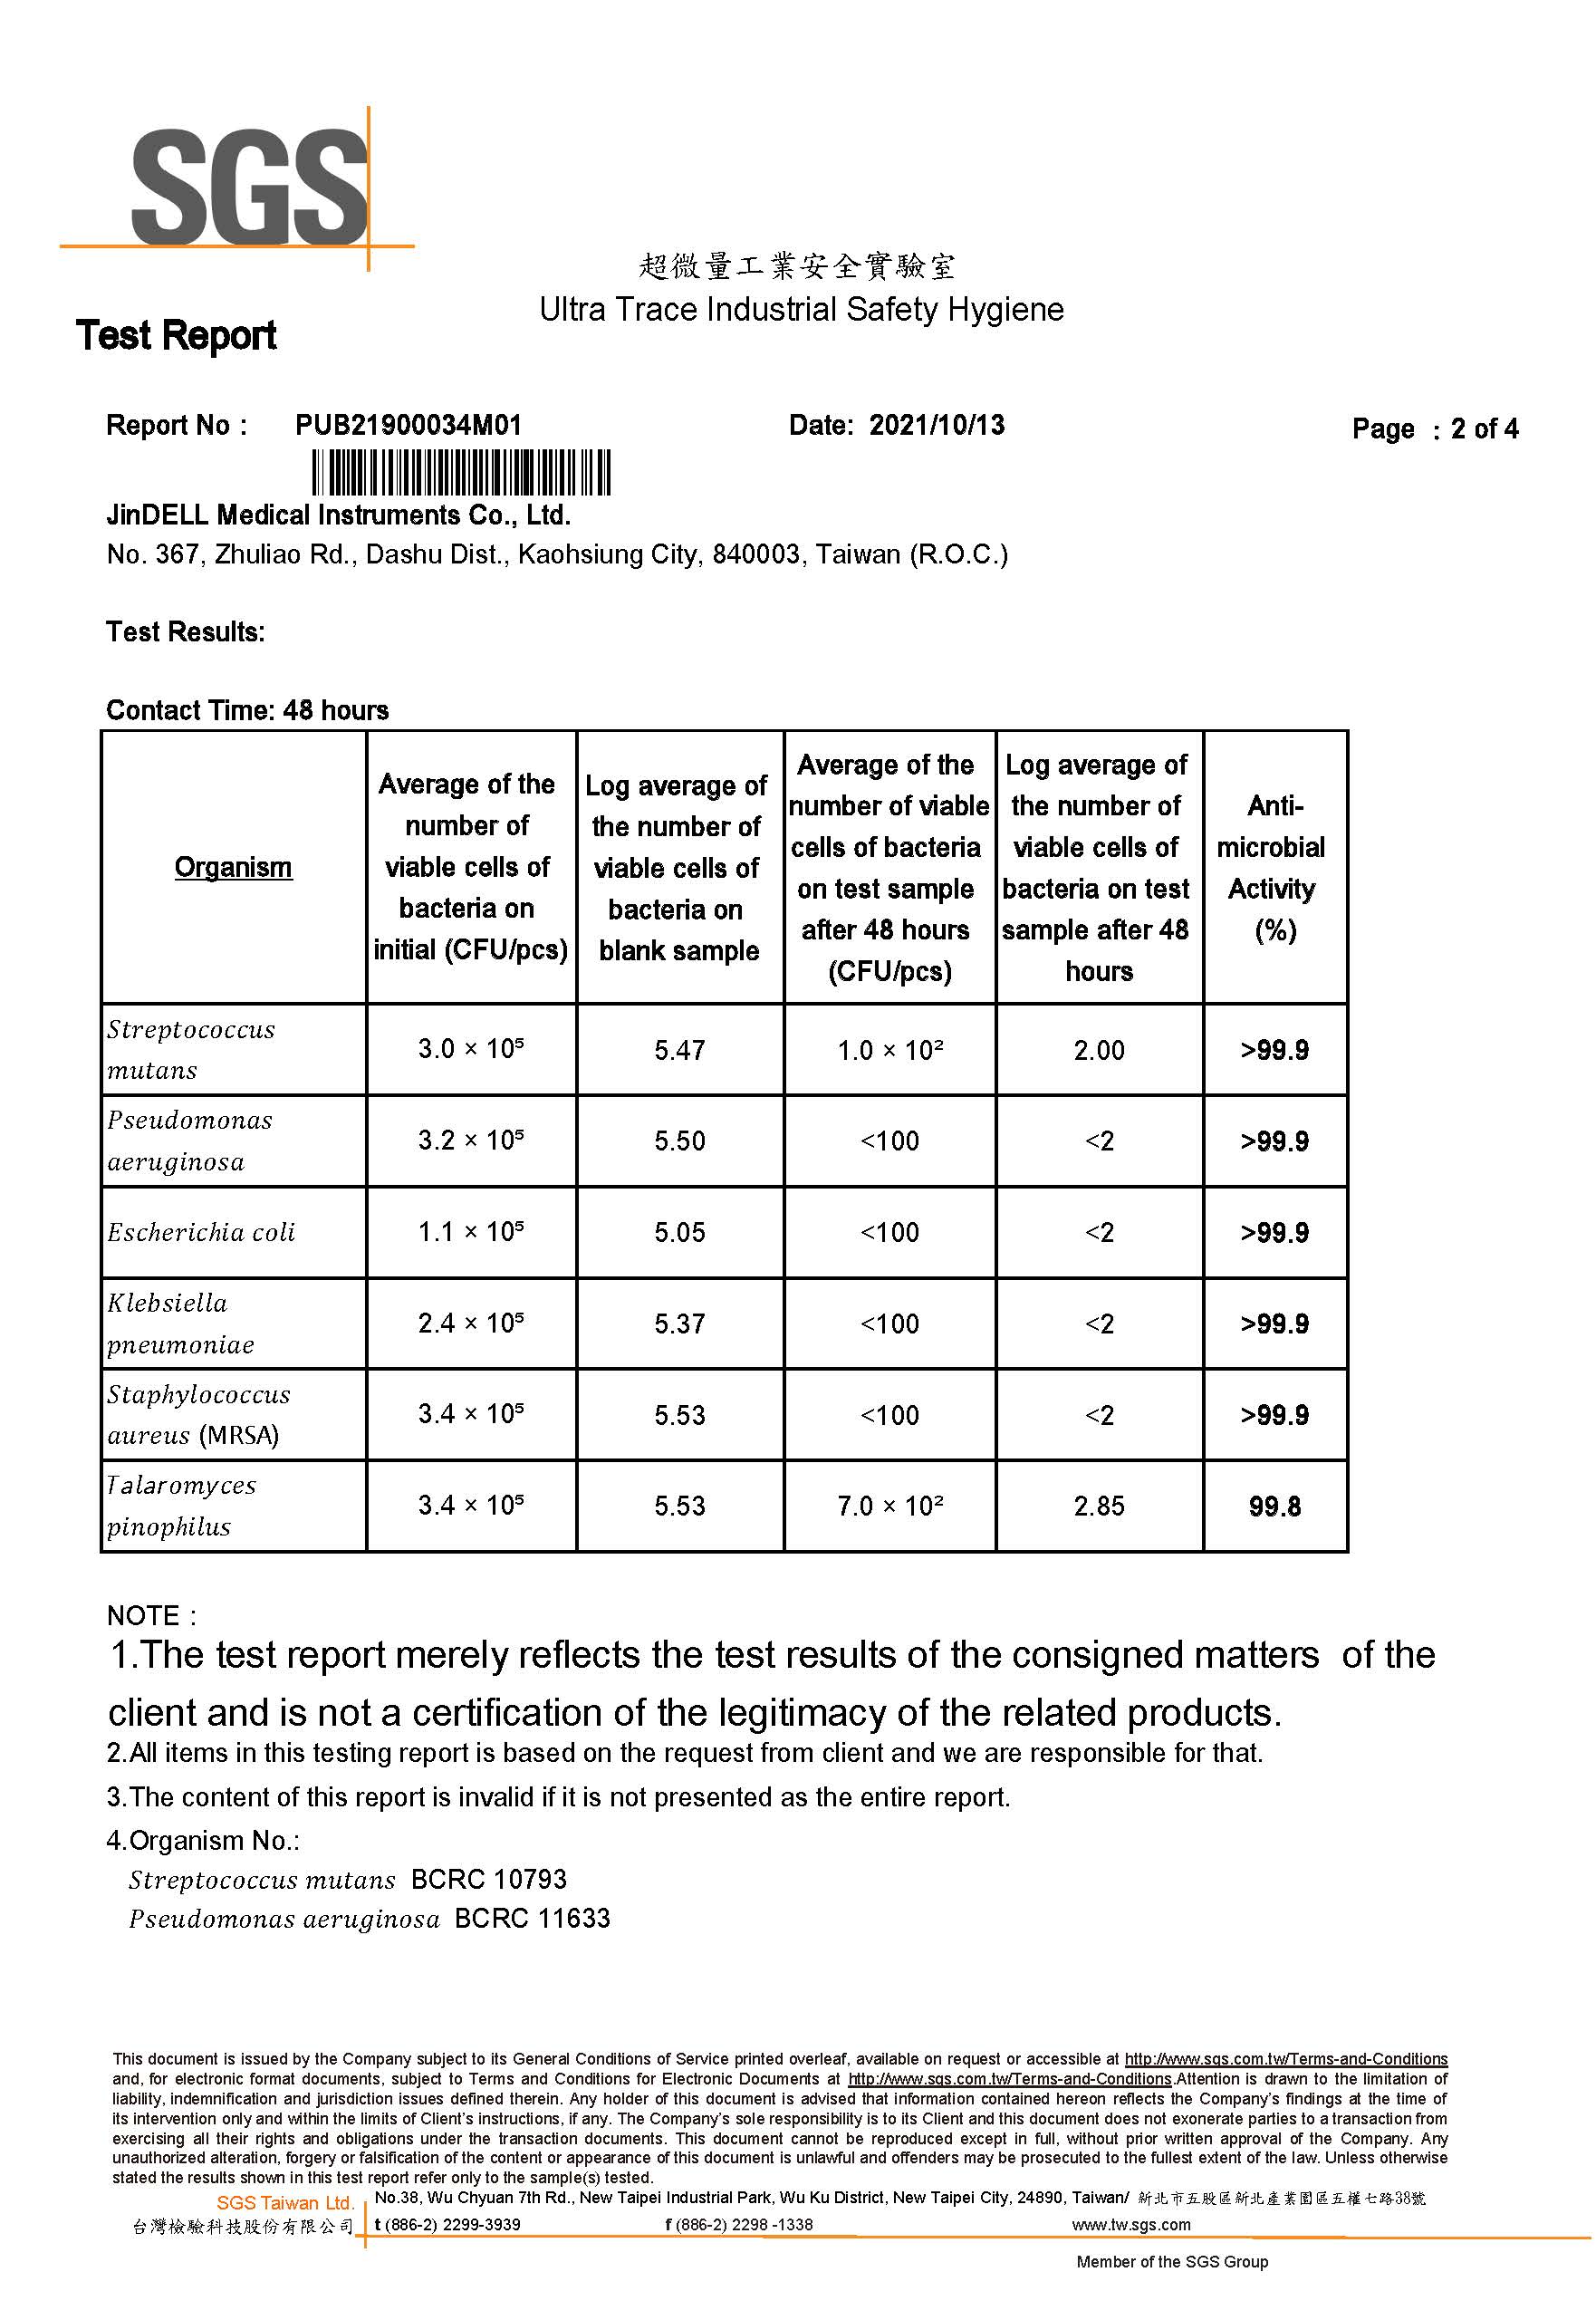 SGS antibacterial test report